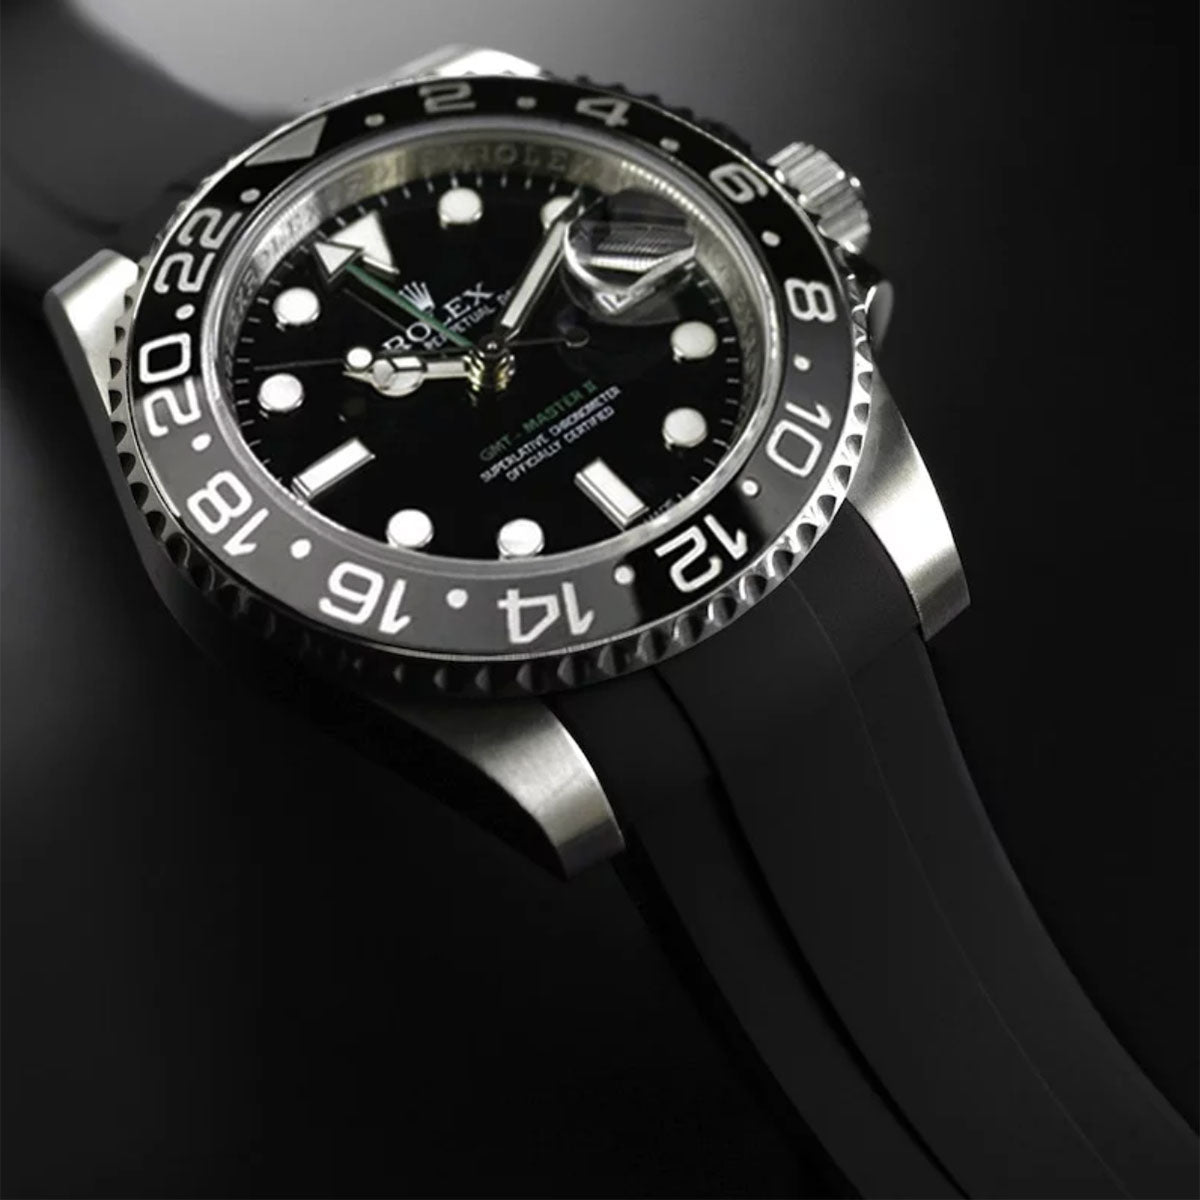 Rolex - Rubber B - Bracelet caoutchouc pour GMT Master II CERAMIC - Série classique - watch band leather strap - ABP Concept -